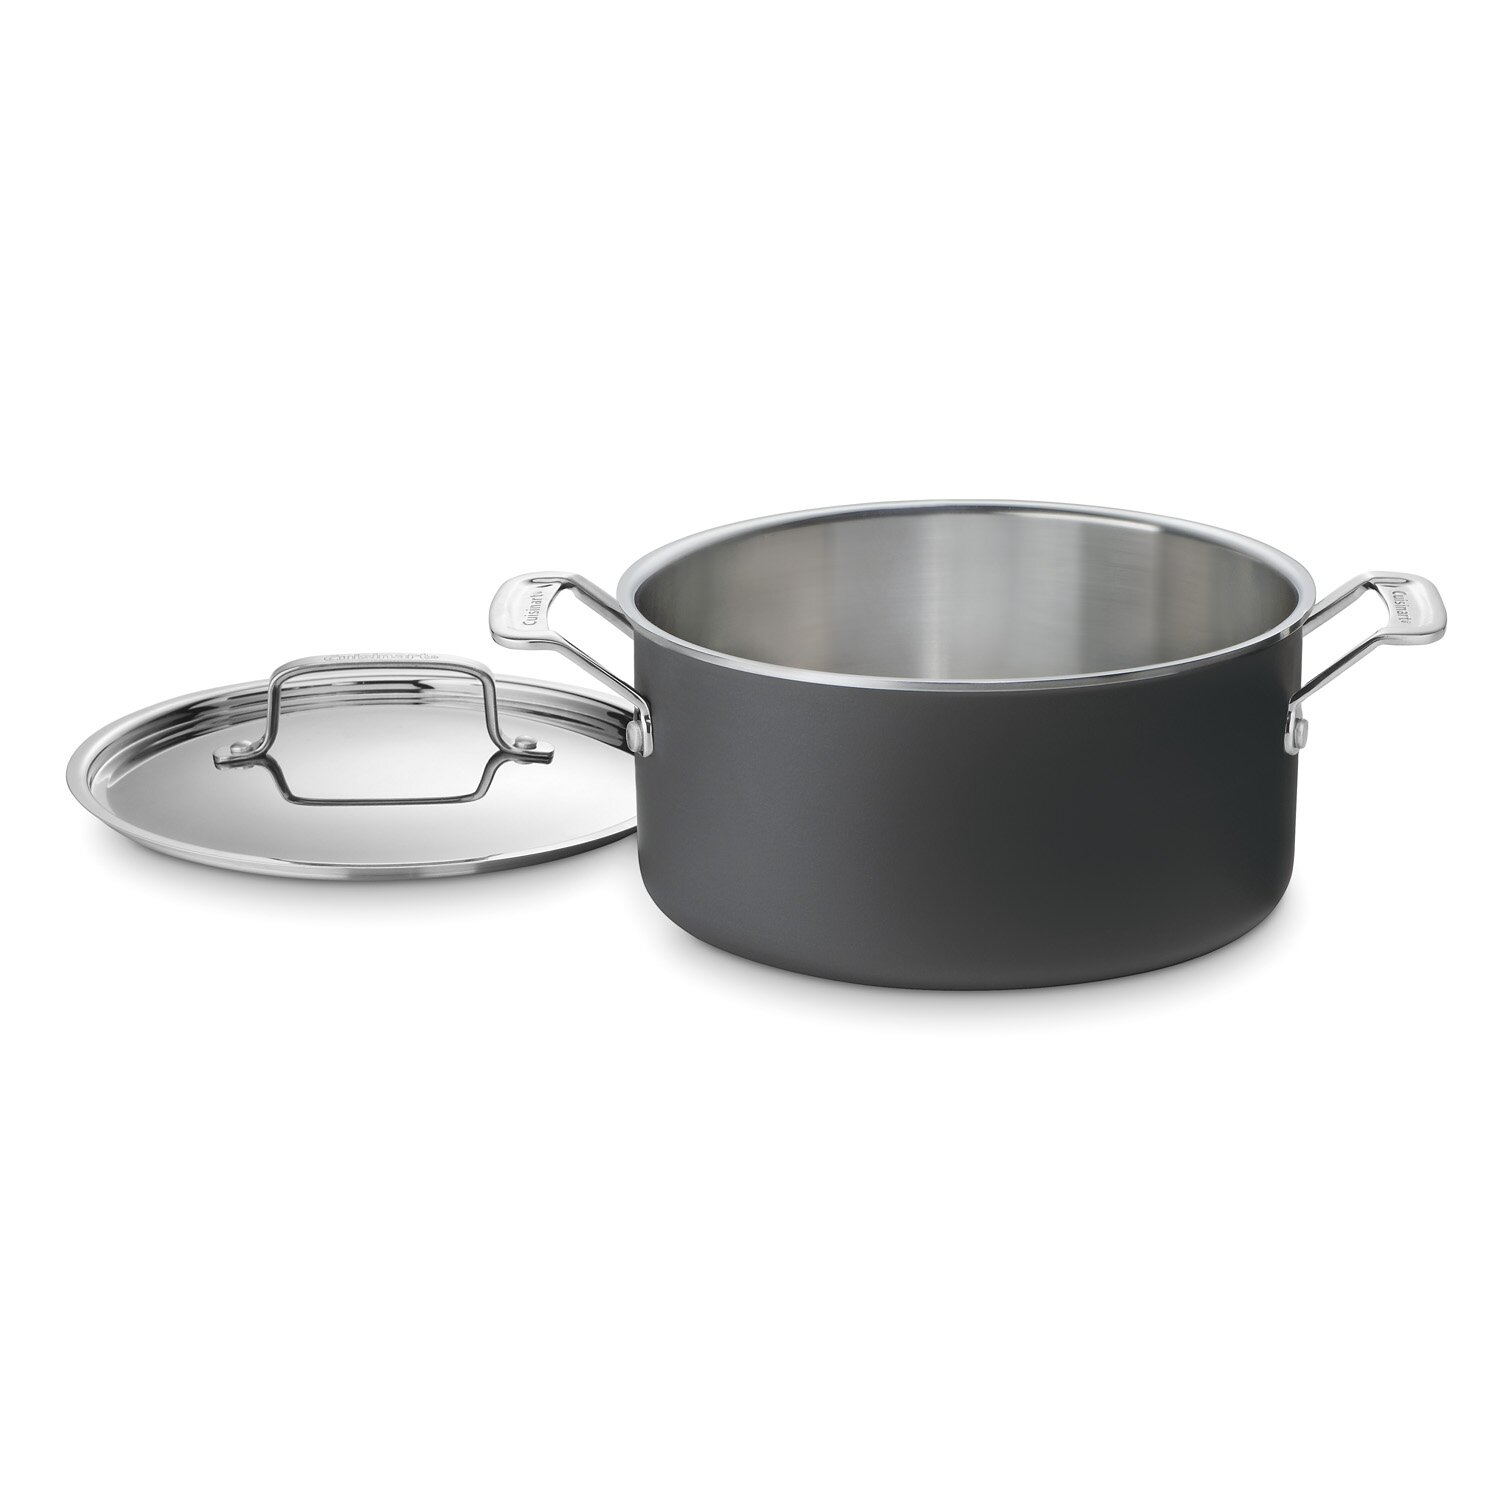 Cuisinart 6 Qt. Stock Pot with Lid | Wayfair Cuisinart 6 Qt Stainless Steel Stock Pot